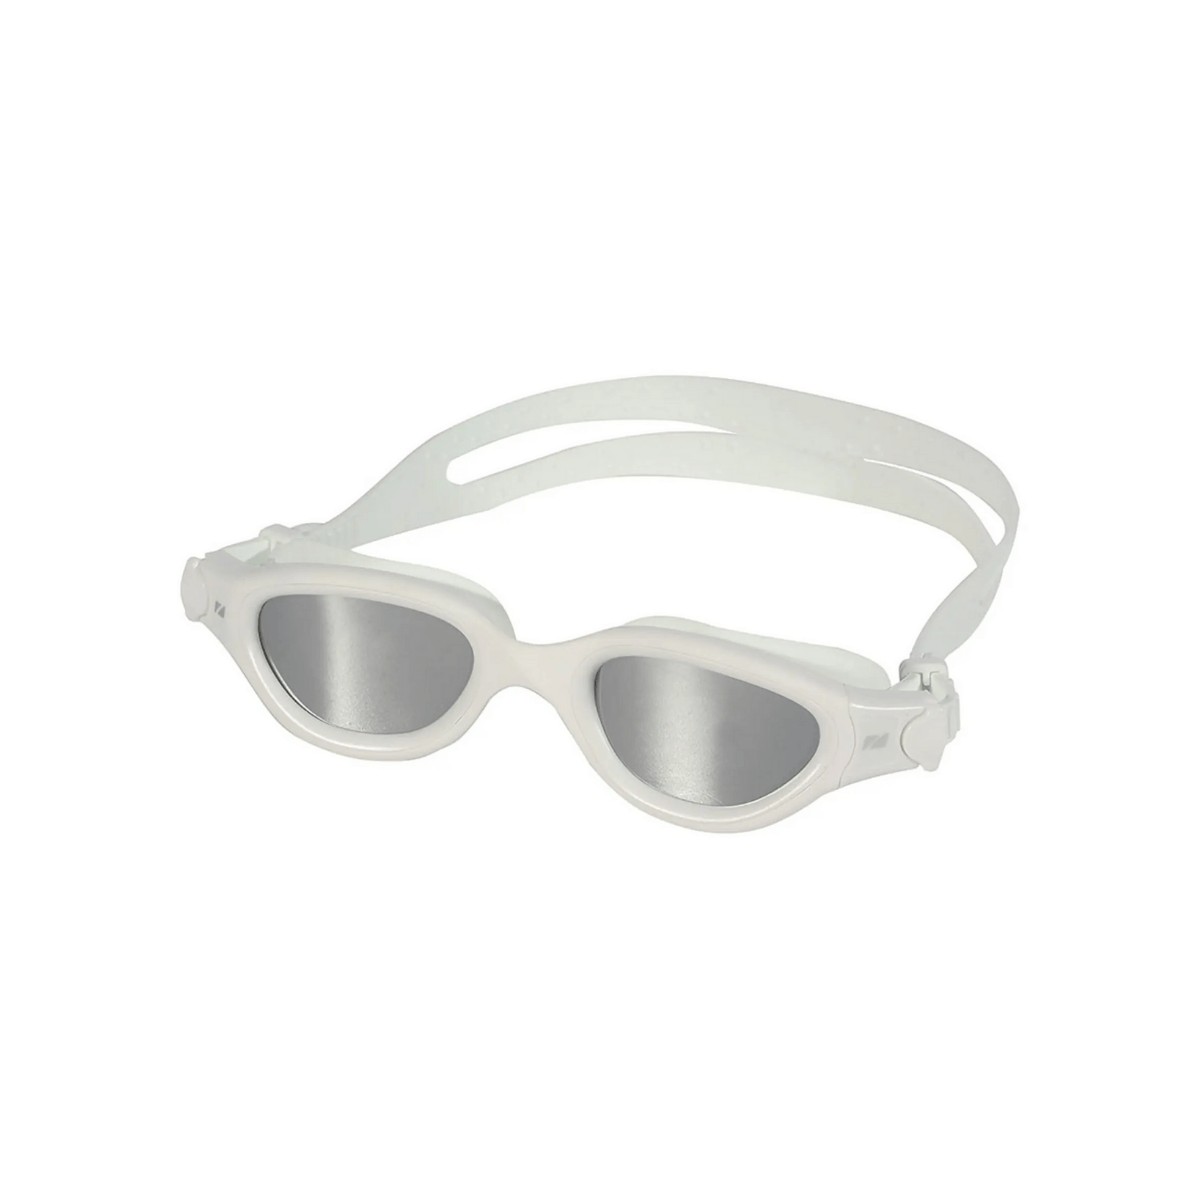 Lunettes de natation Zone3 Venator-X blanches avec verres miroir gris